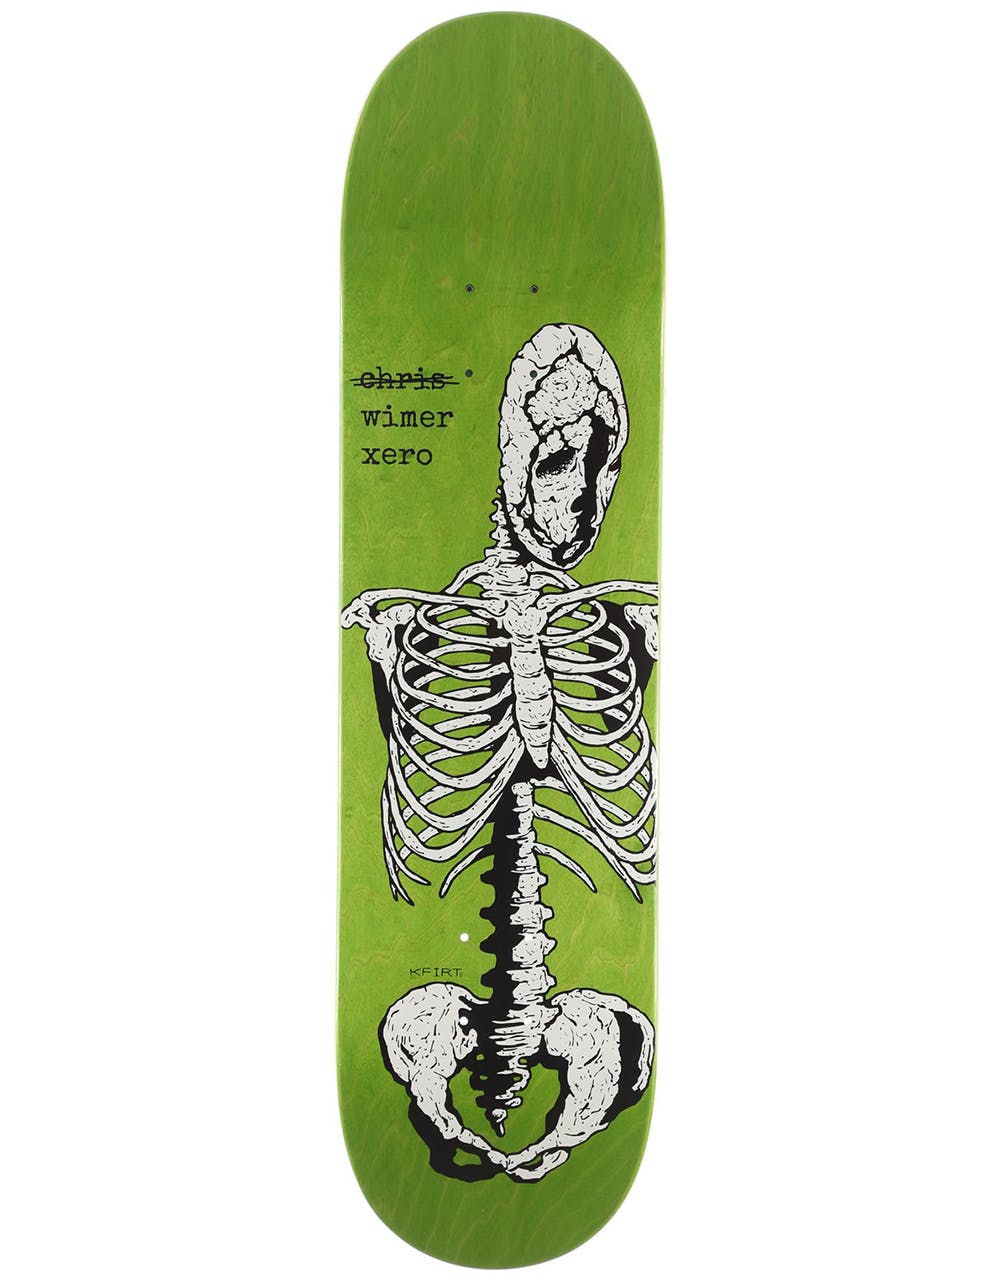 Zero Wimer Kfirt Skateboard Deck - 8.25"